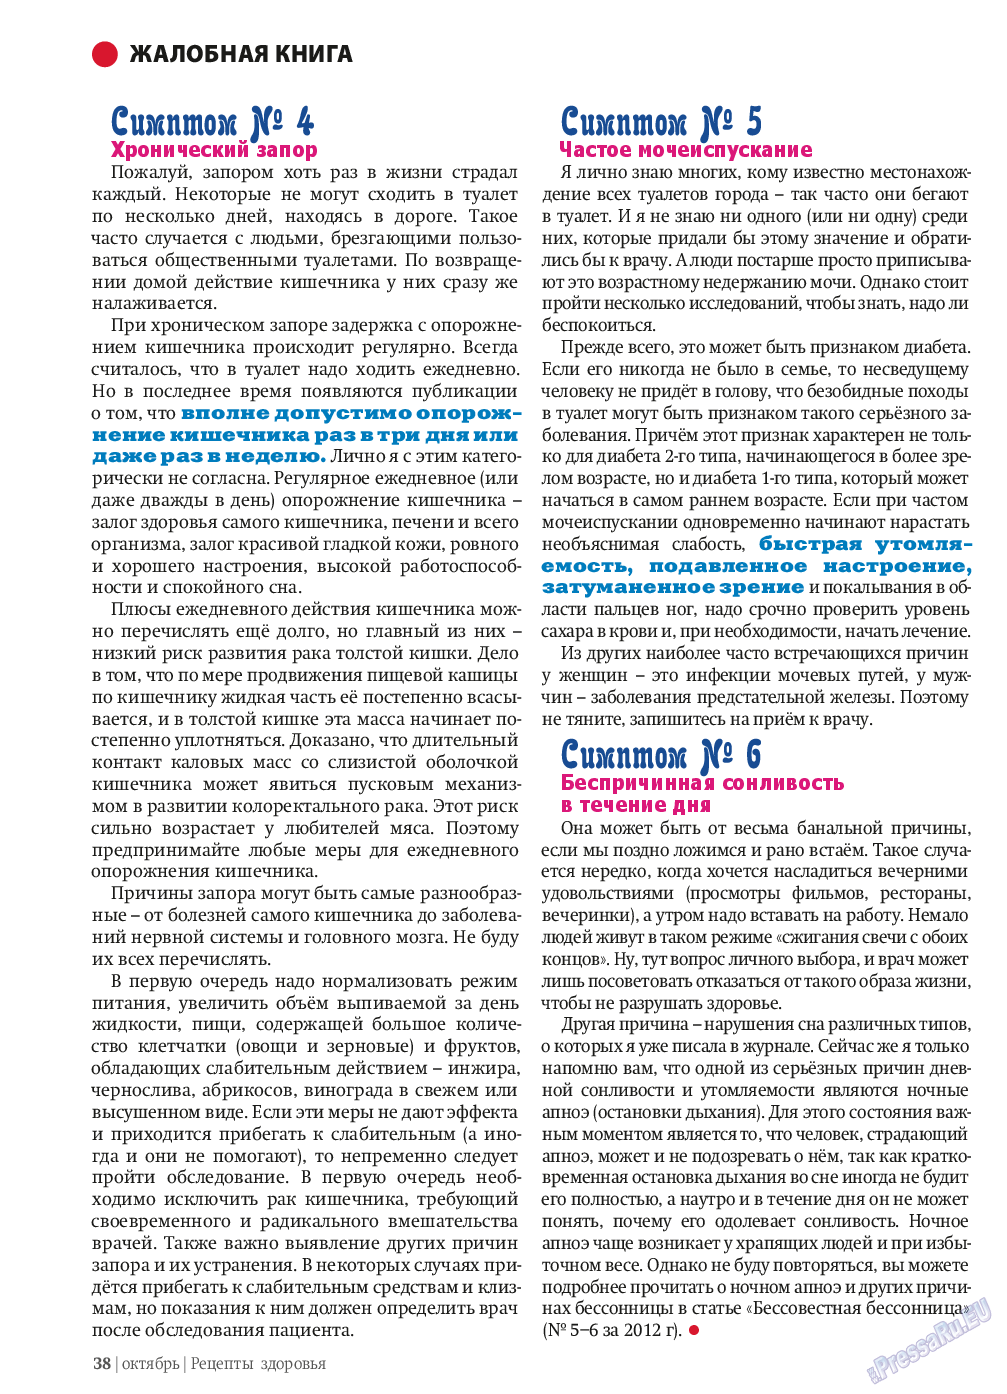 Рецепты здоровья, журнал. 2013 №10 стр.38